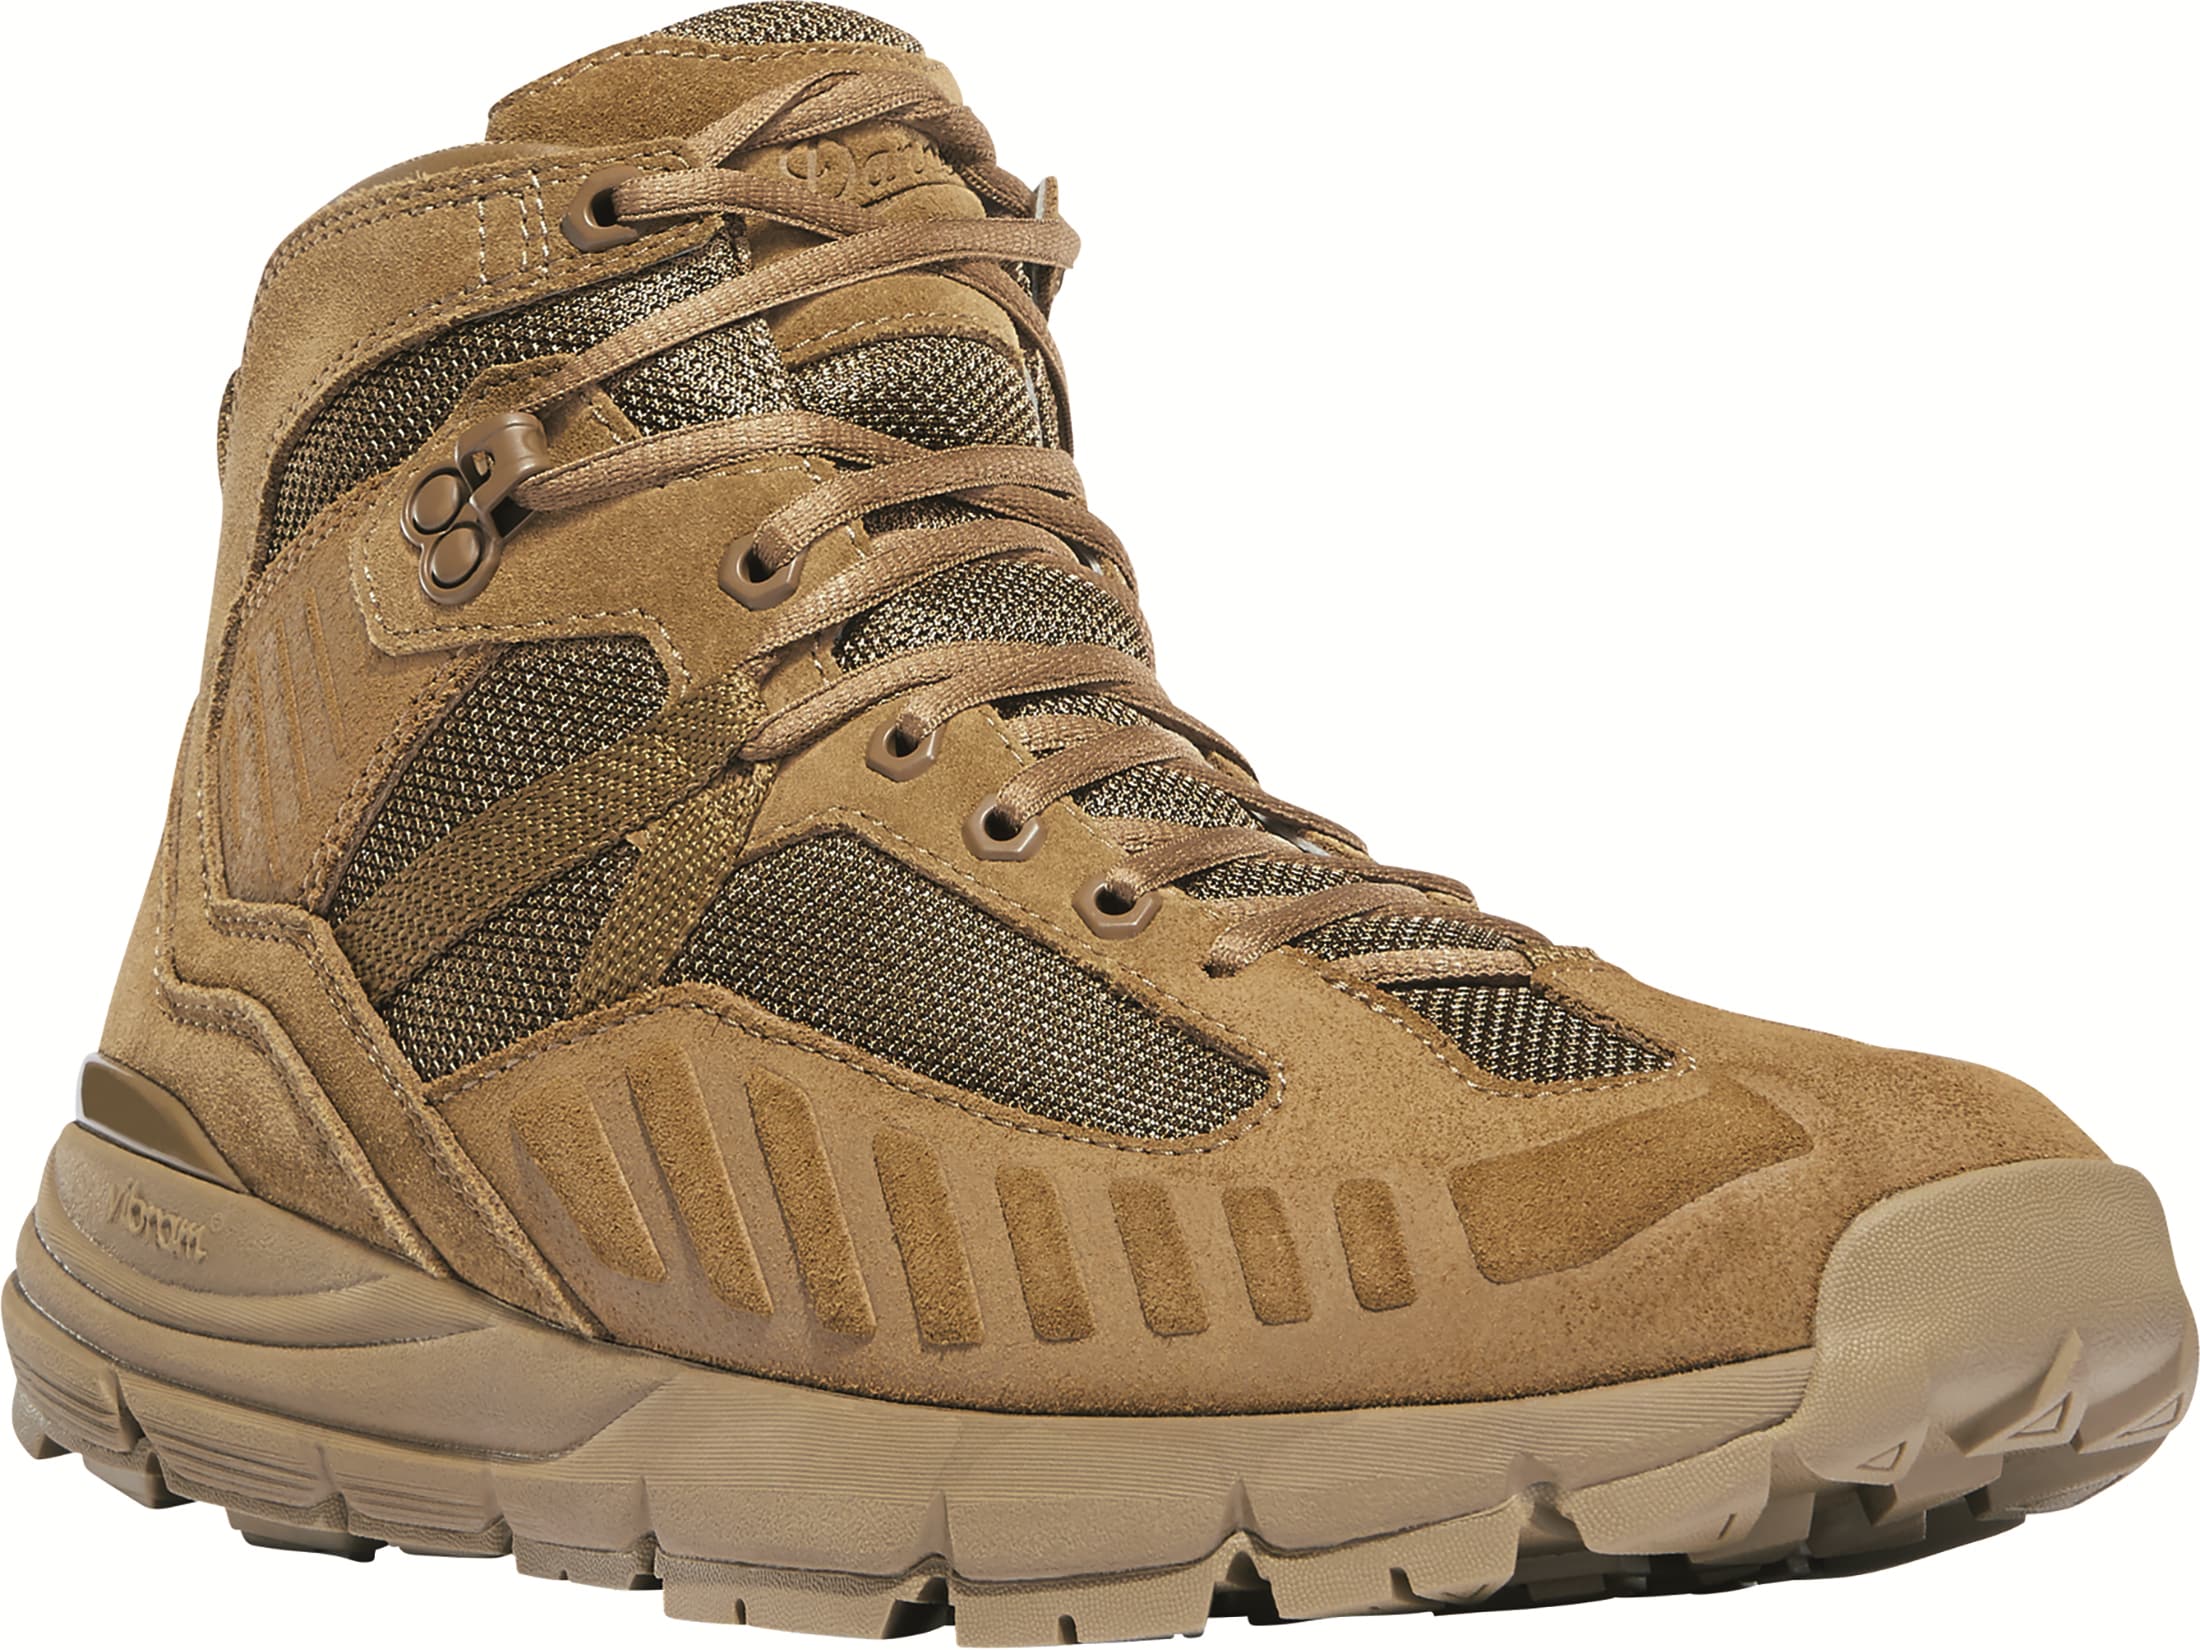 Danner Fullbore 4.5 Tactical Boots Suede/Nylon Coyote Men's 9 D